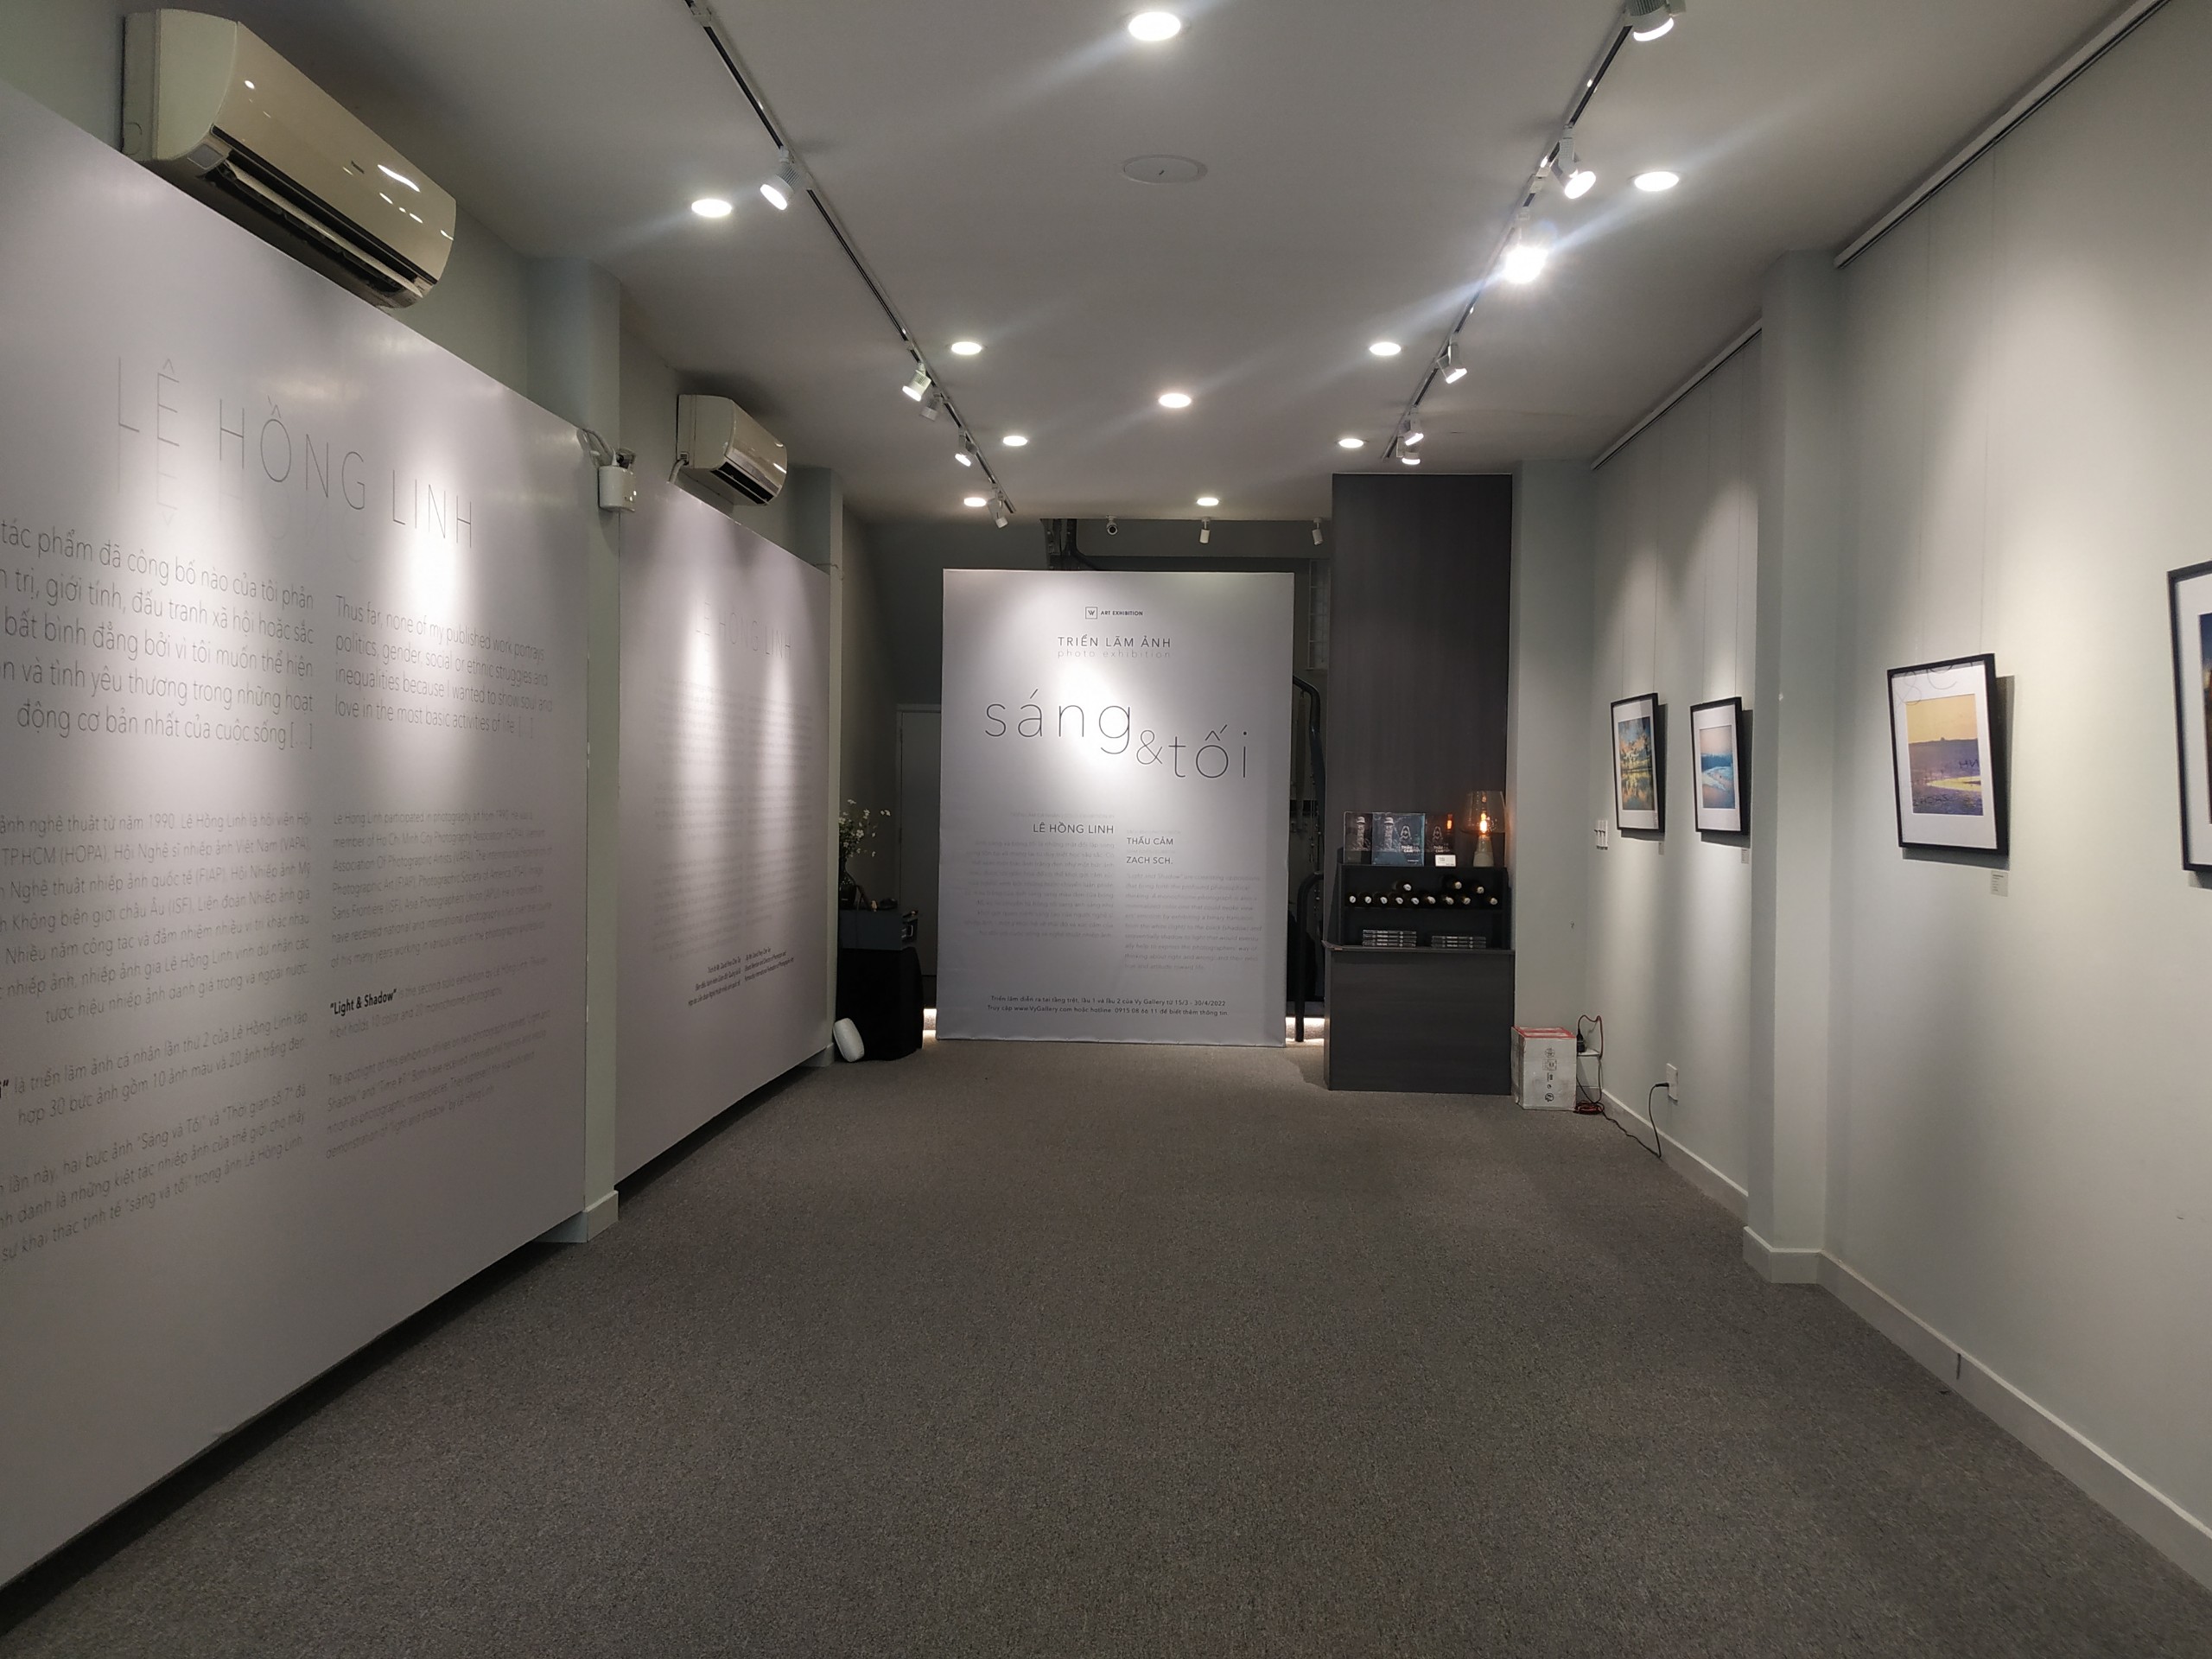 Triển lãm được trưng bày ở tầng trệt, tầng 1 và tầng 2 nha